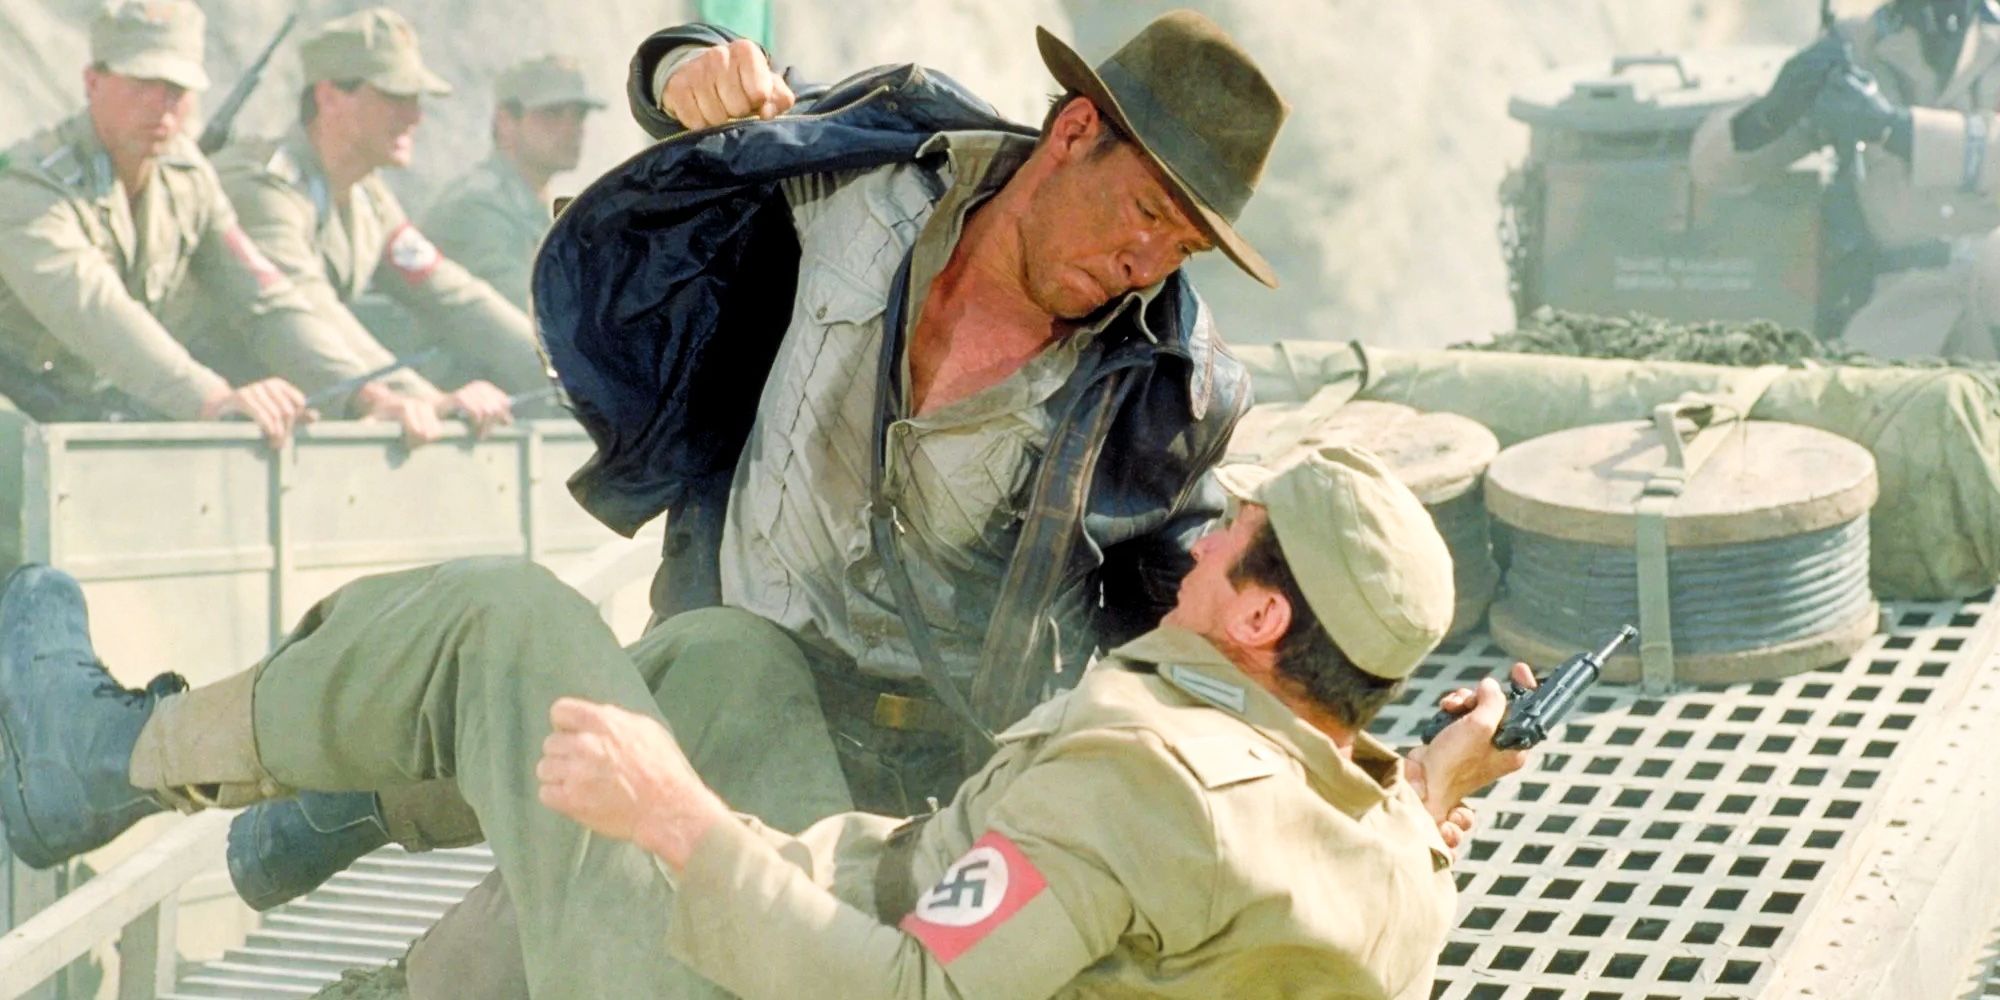 Indiana_Jones_Punching_Nazi